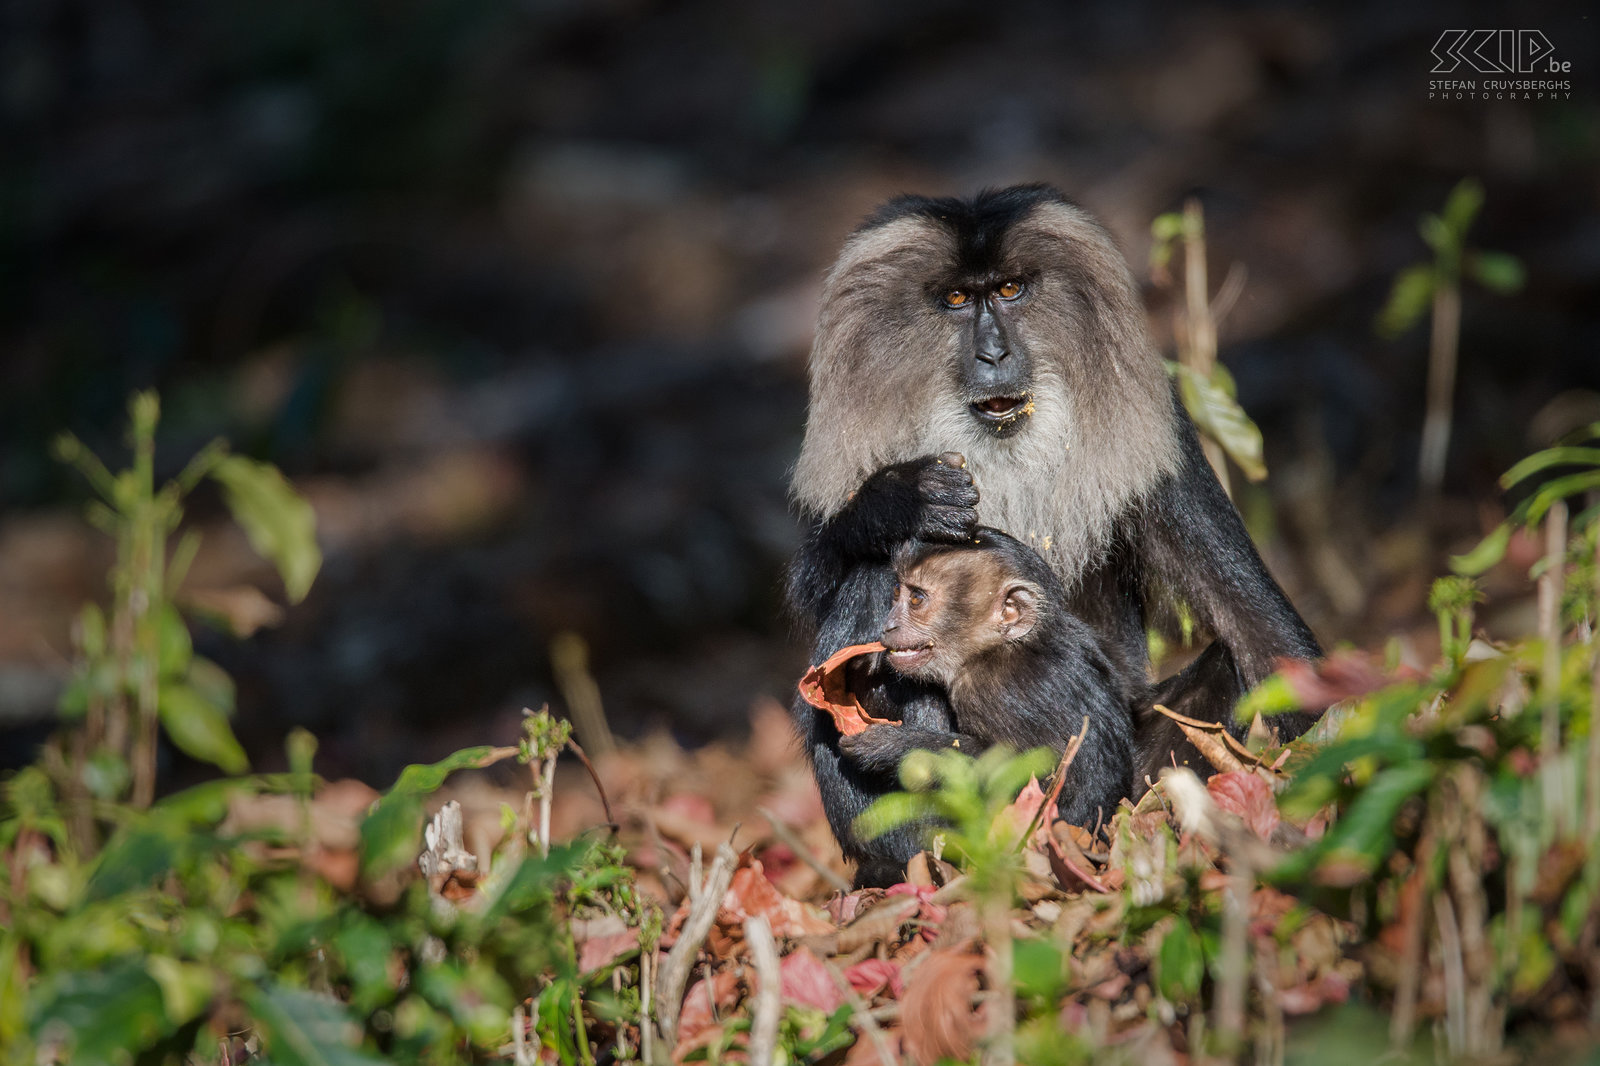 Valparai - Wanderoe met baby De wanderoe, baardaap of leeuwenstaartmakaak (Lion-tailed macaque, Macaca silenus) is een bedreigde apensoort en endemisch in het West Ghats gebergte in het zuiden van India. Het is een prachtige en weinig schuwe apensoort die je nog kan terugvinden in de bossen van de theeplantages in Valparai. Stefan Cruysberghs